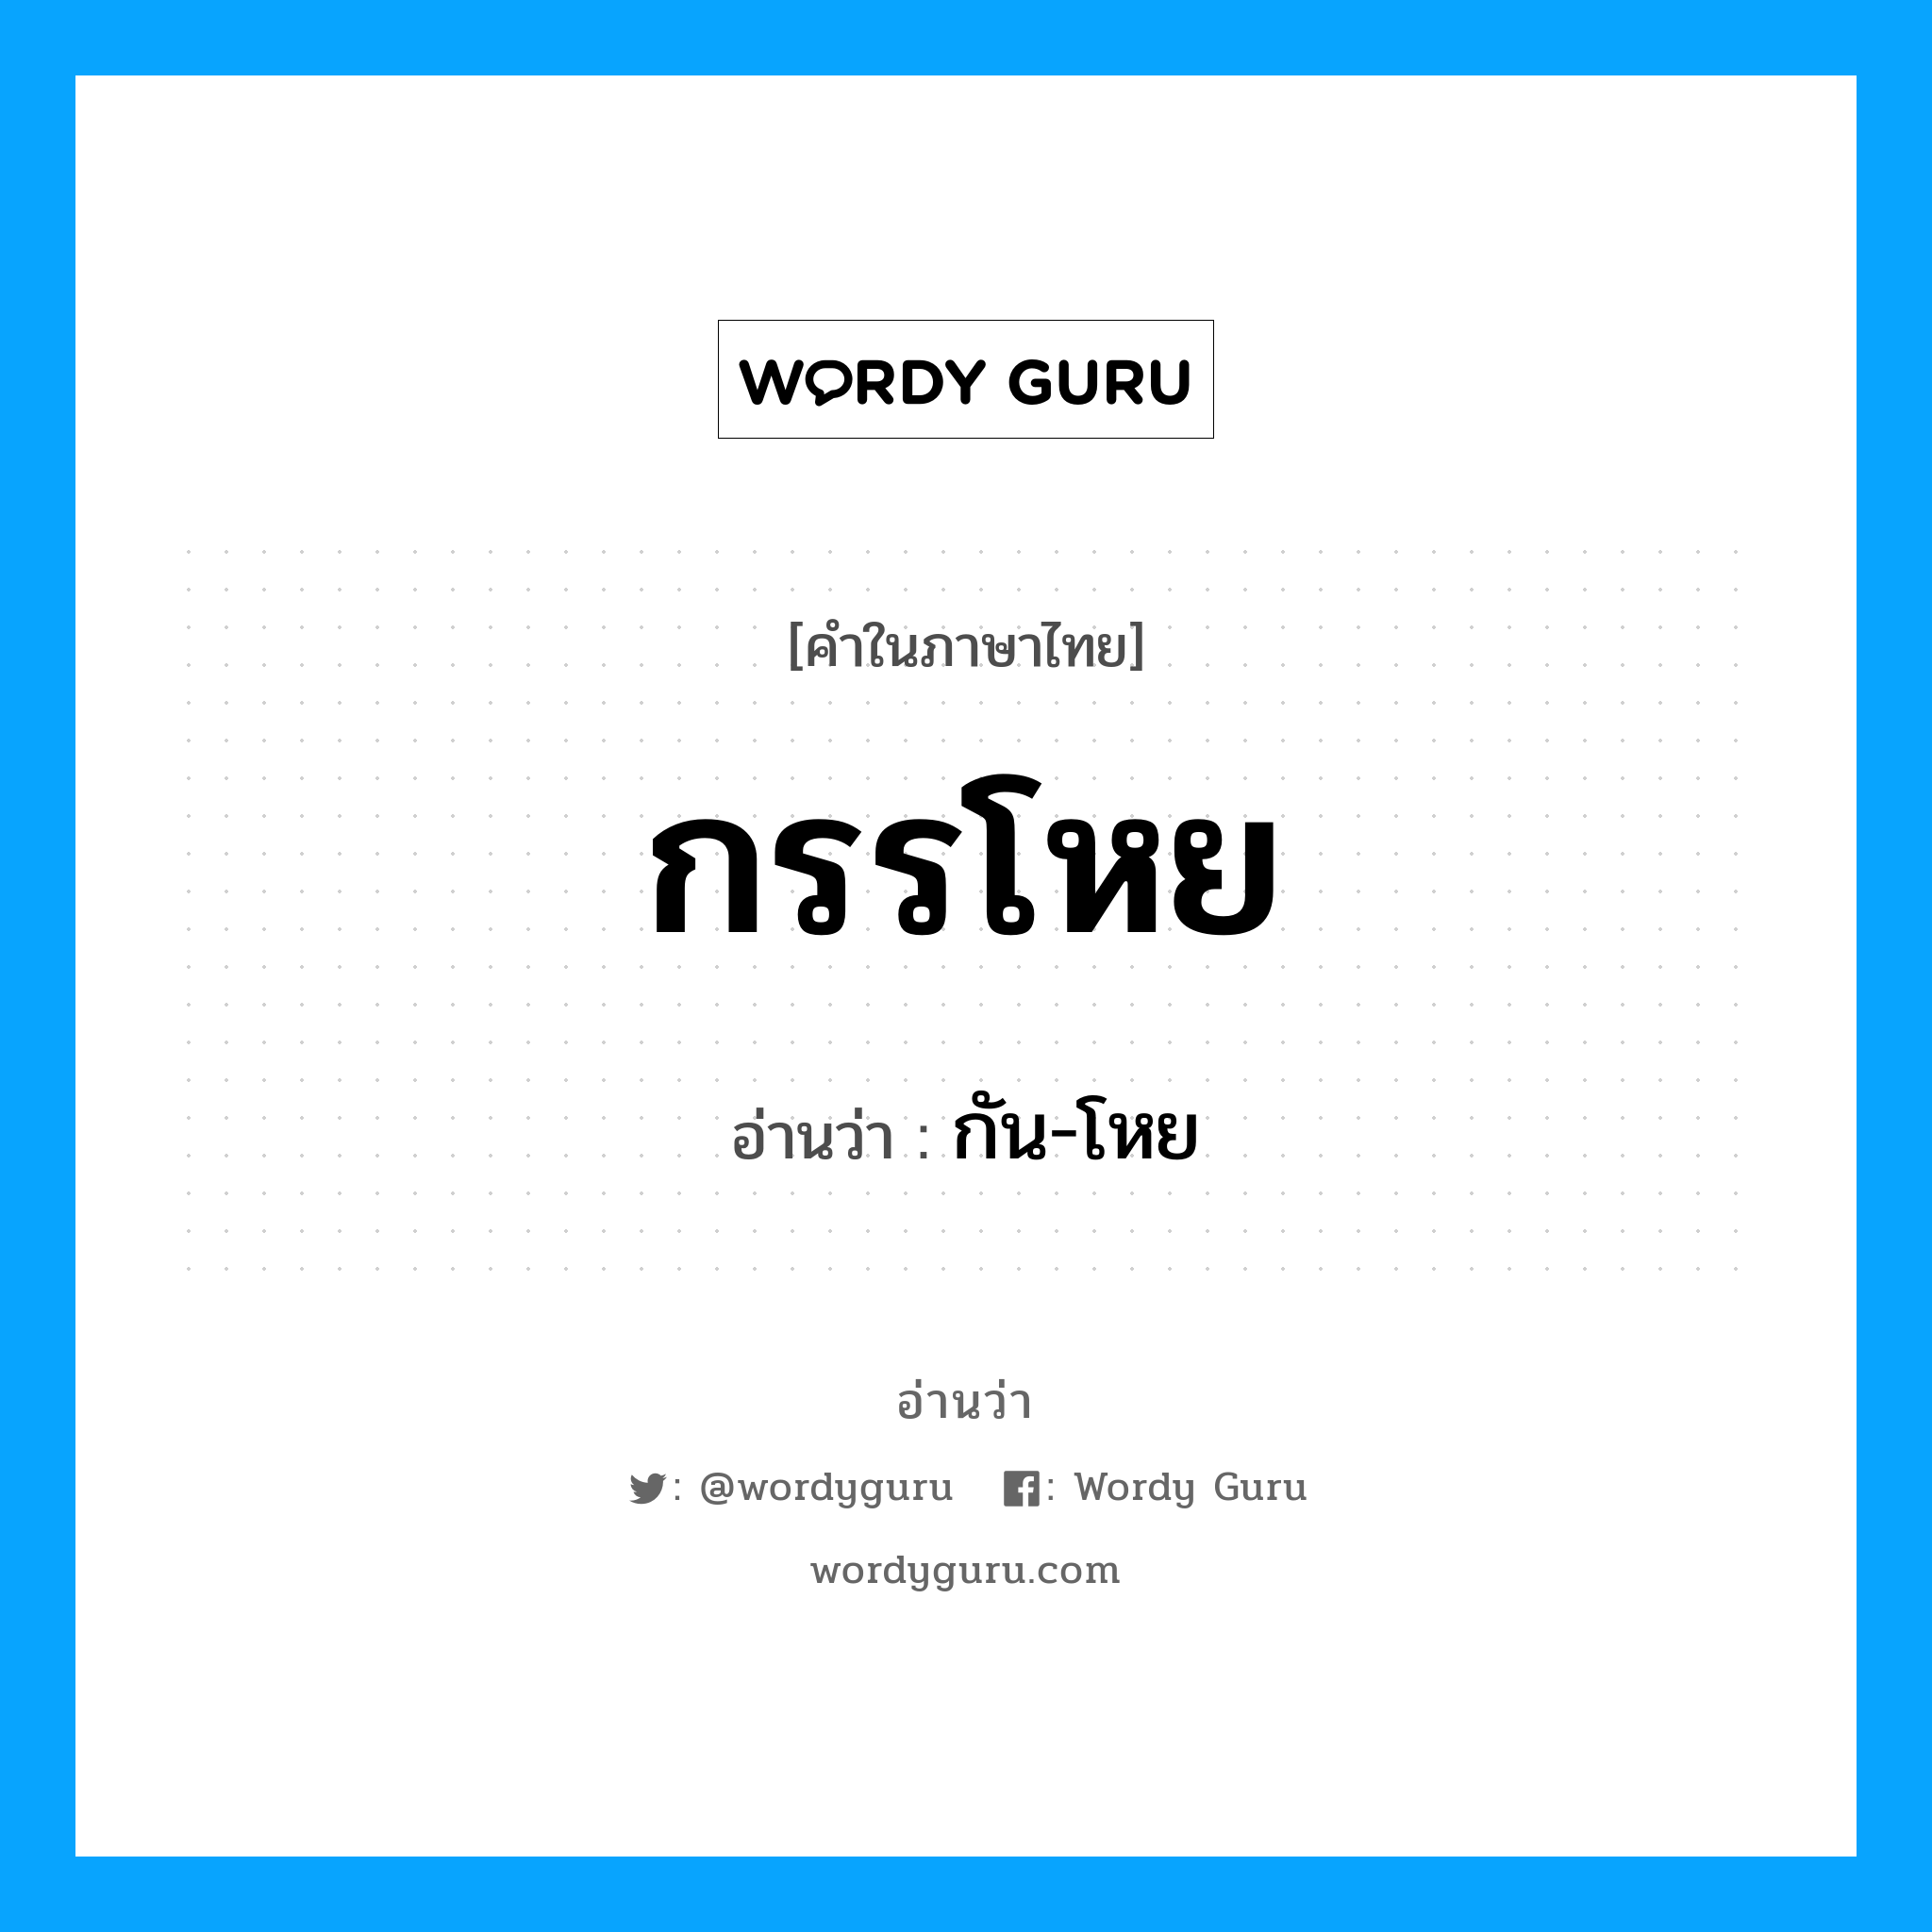 กัน-โหย เป็นคำอ่านของคำไหน?, คำในภาษาไทย กัน-โหย อ่านว่า กรรโหย